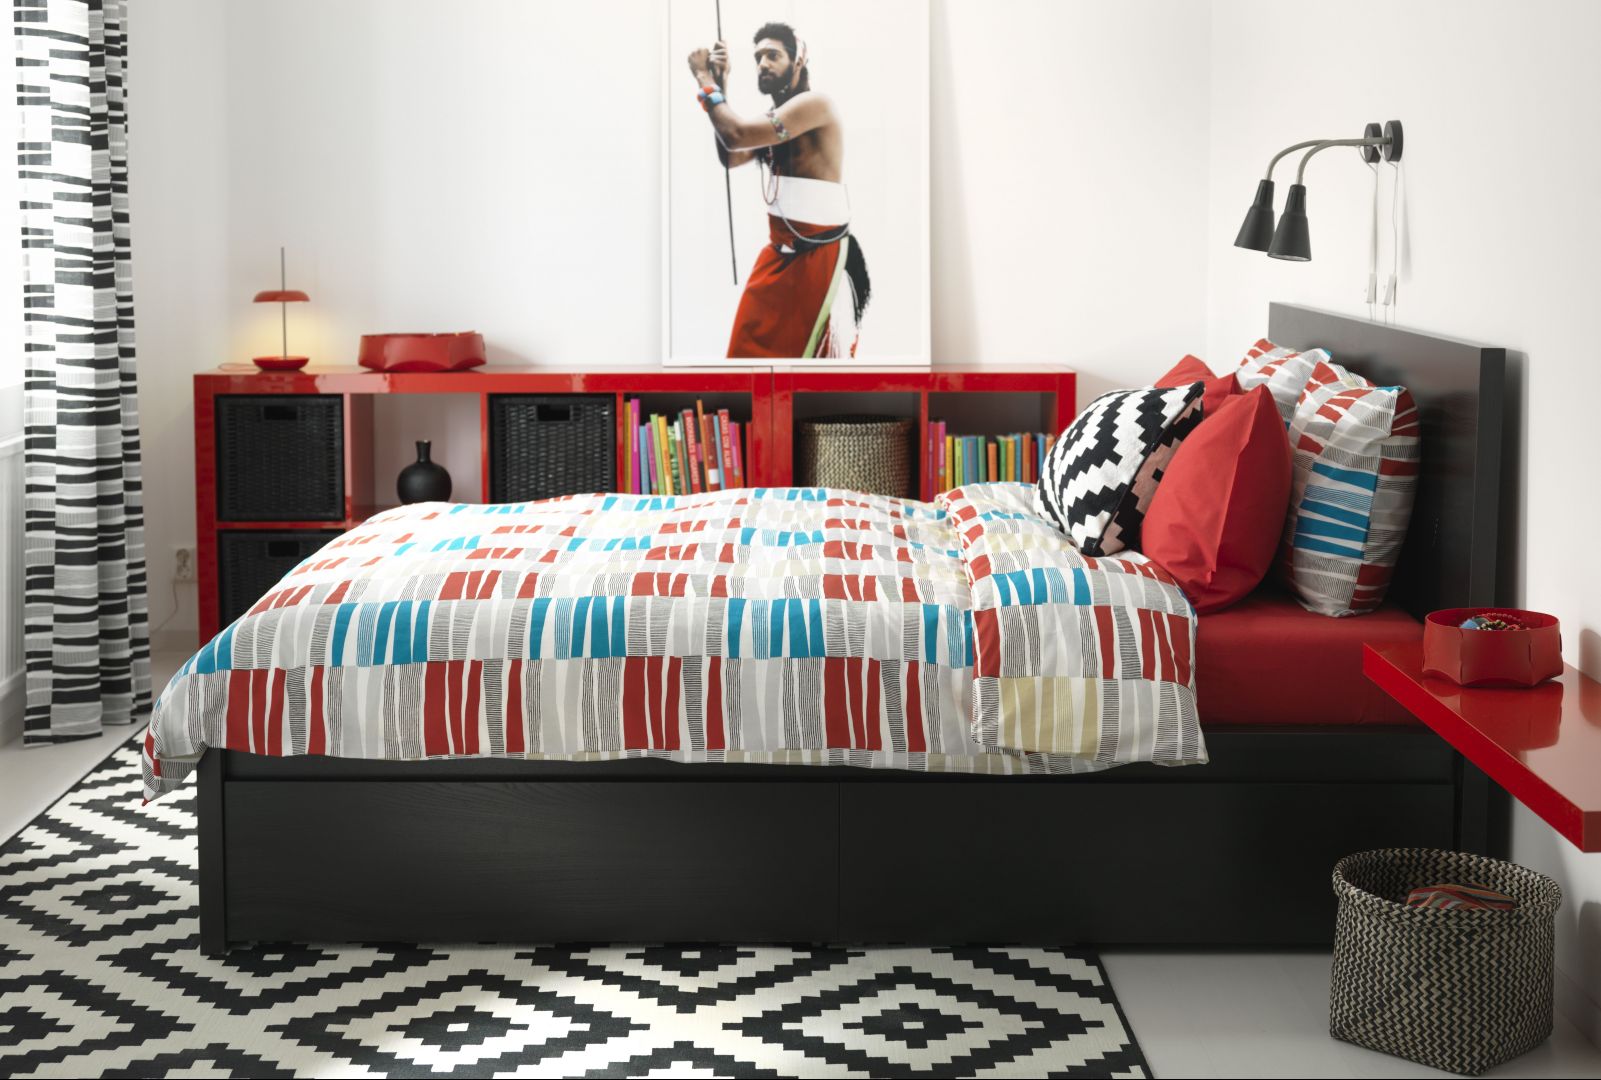 Łóżko Malm marki Ikea. 4 duże szuflady na kółkach zapewnią dodatkowe miejsce do przechowywania pod łóżkiem. Dzięki okleinie z prawdziwego drewna, łóżko będzie starzeć się z wdziękiem. Regulowane boki łóżka pozwalają na użycie materacy o różnej grubości.  Fot. IKEA